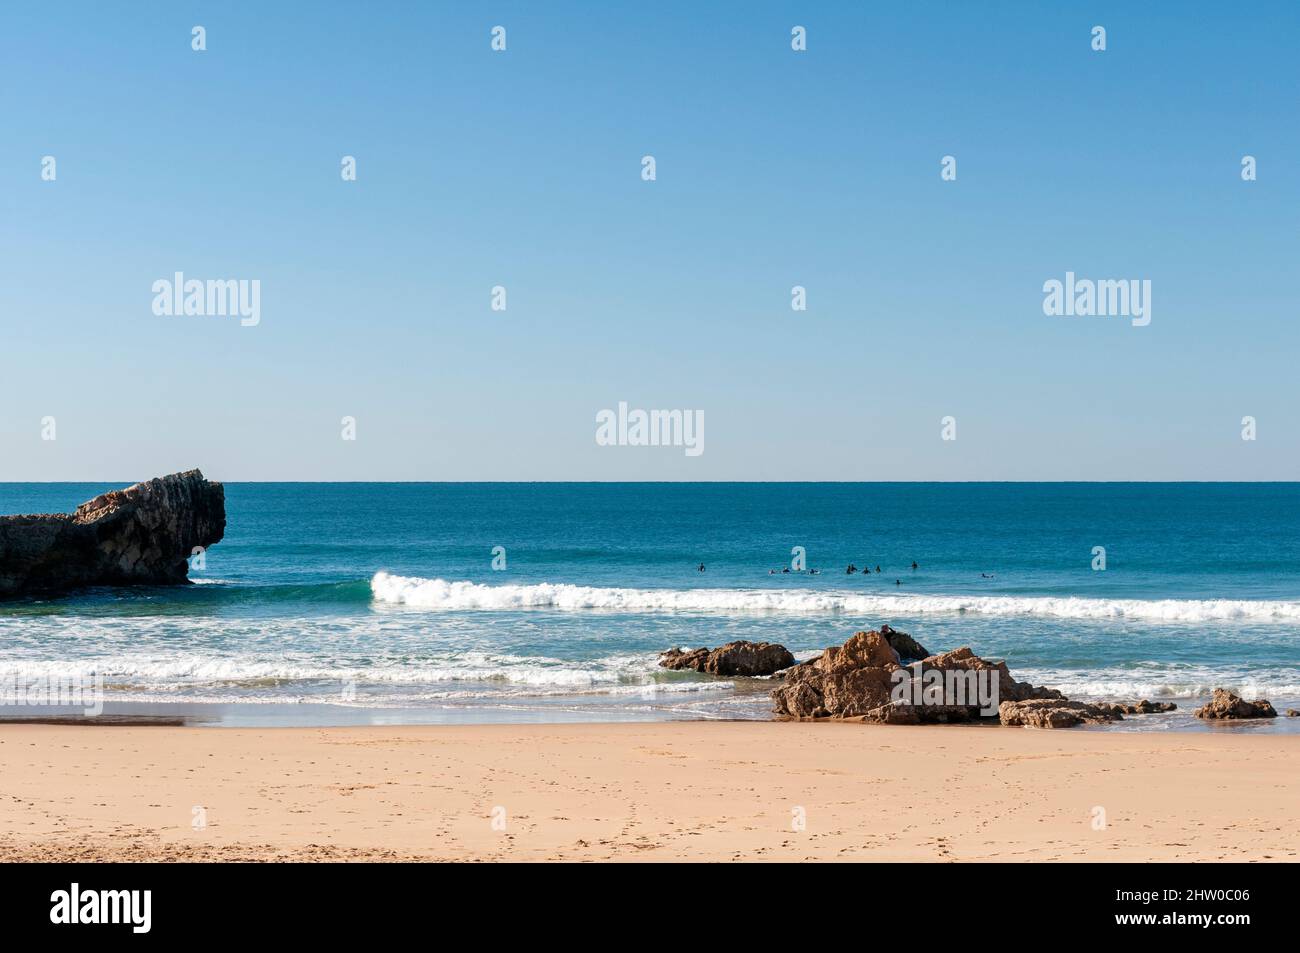 Praia da Coroama, fantastic surfers beach in Portugal's Algarve Stock Photo